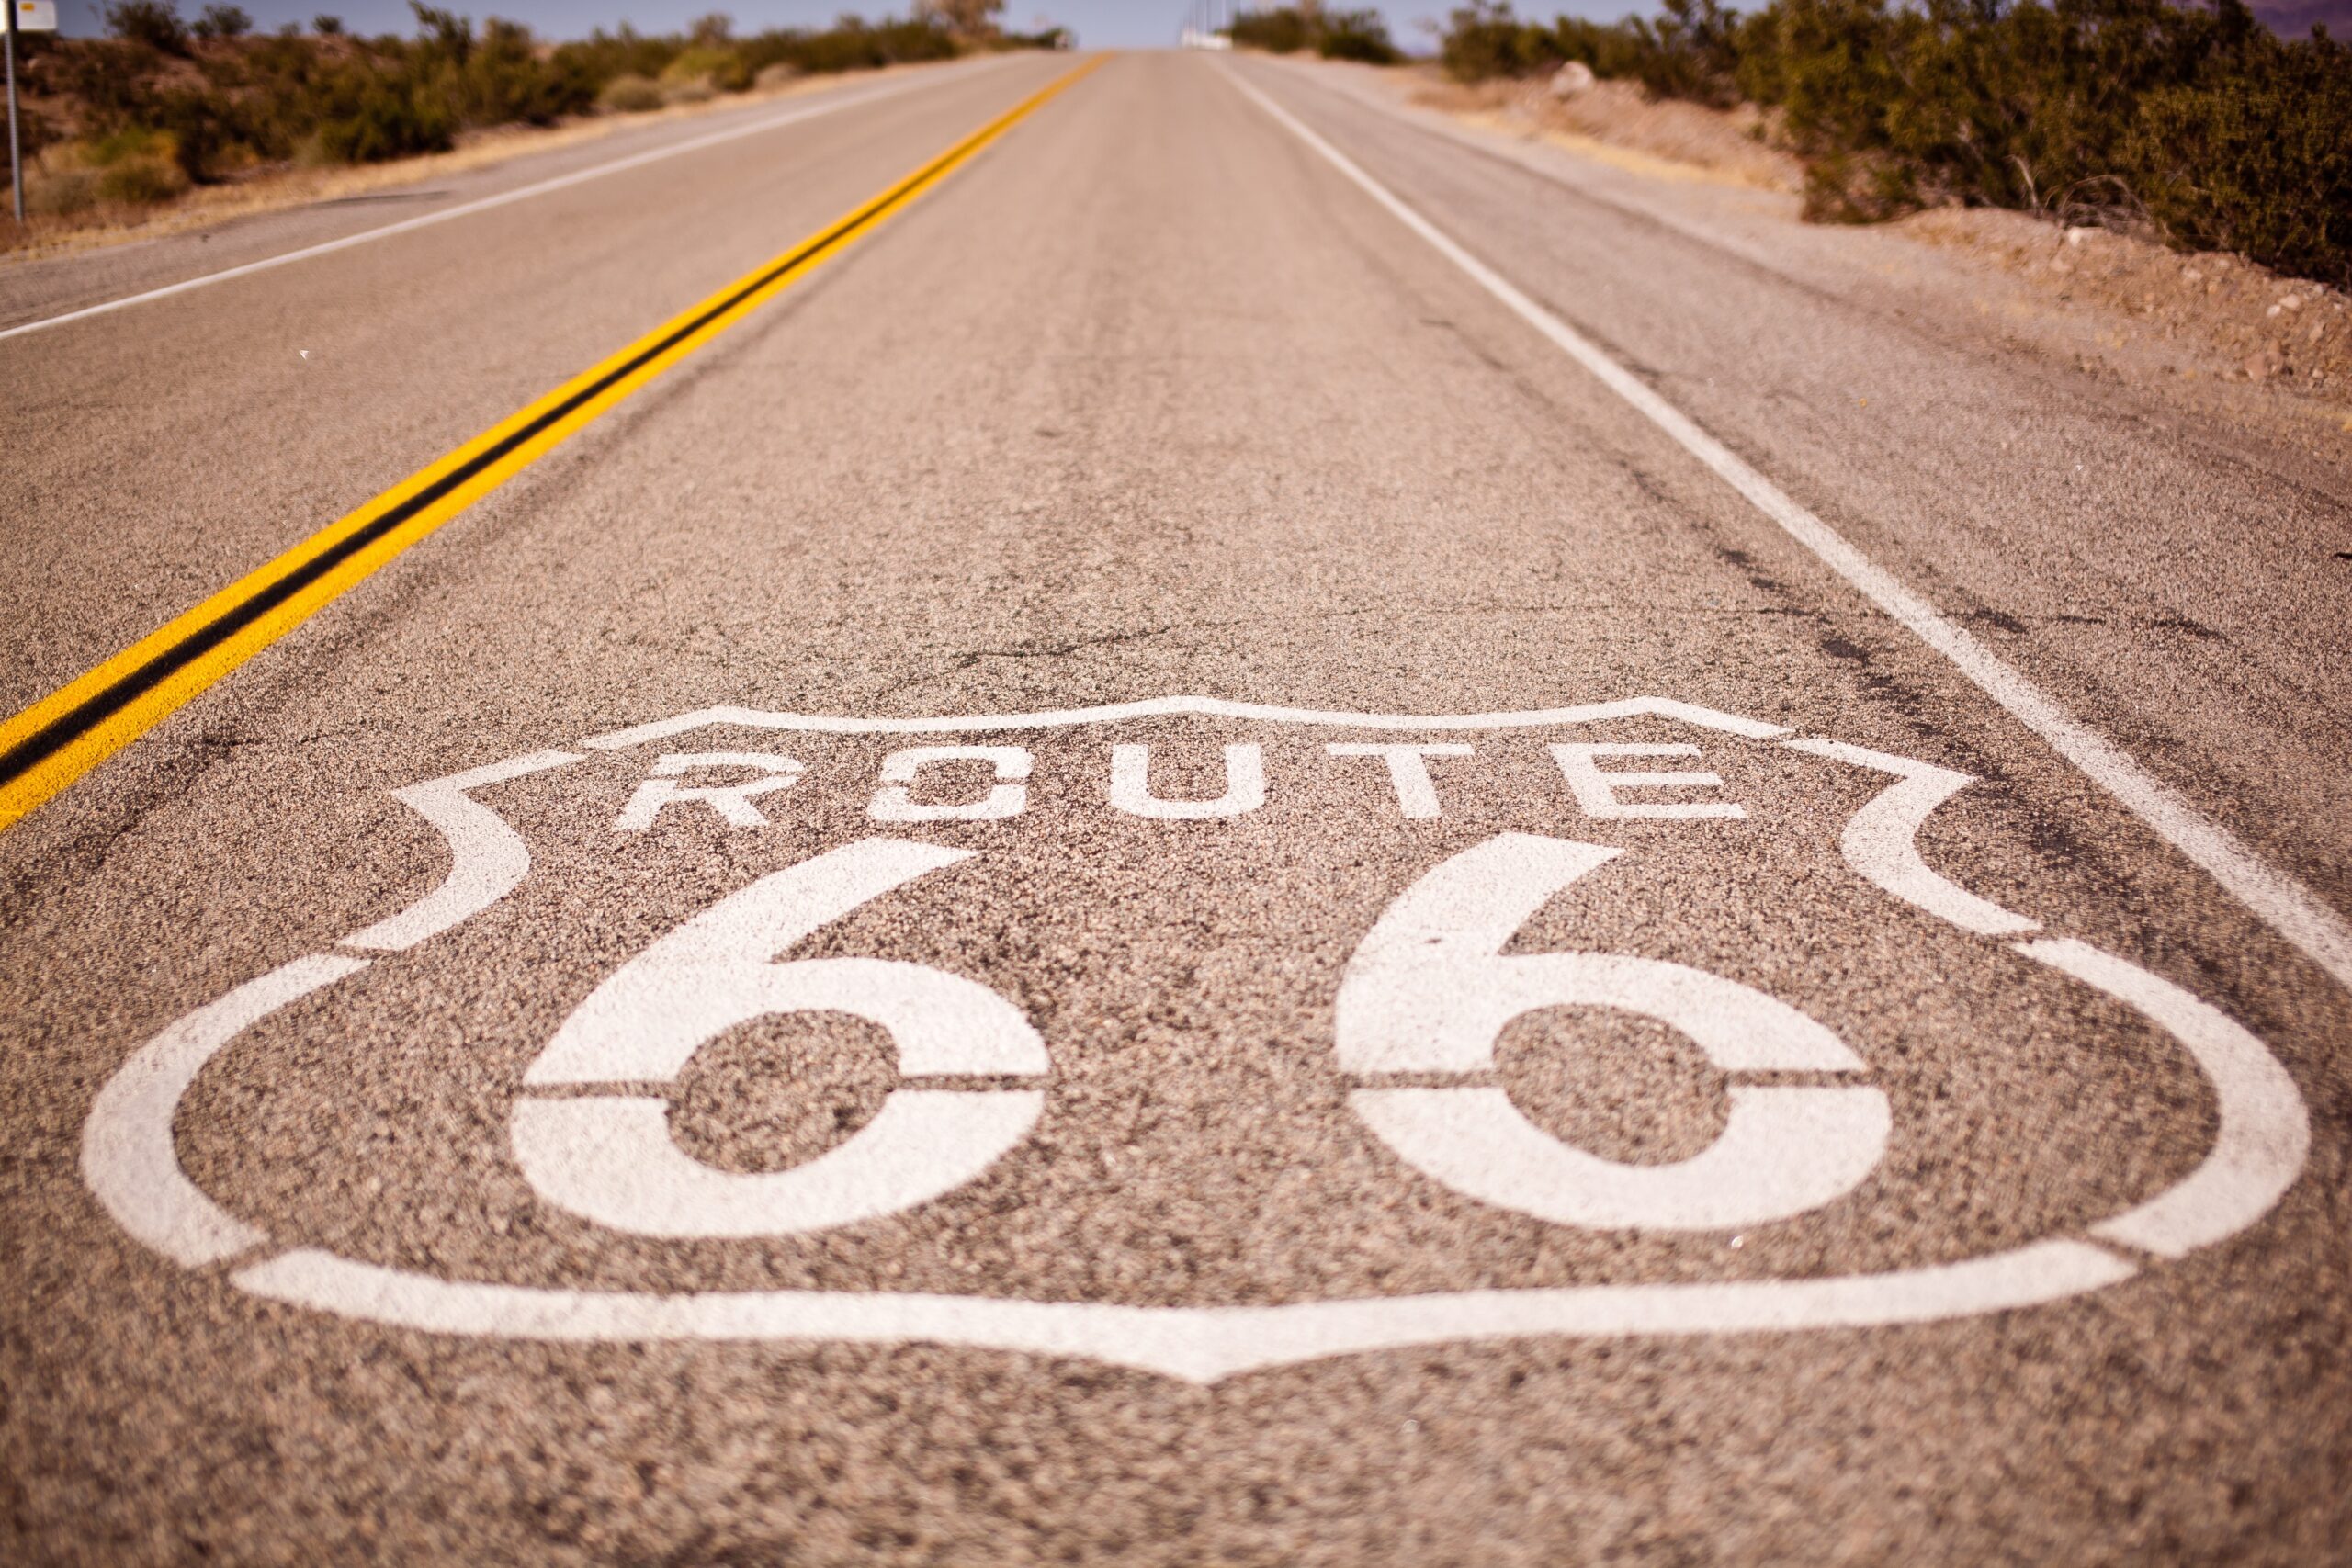 Aliens & Tax Avoidance On Route 66